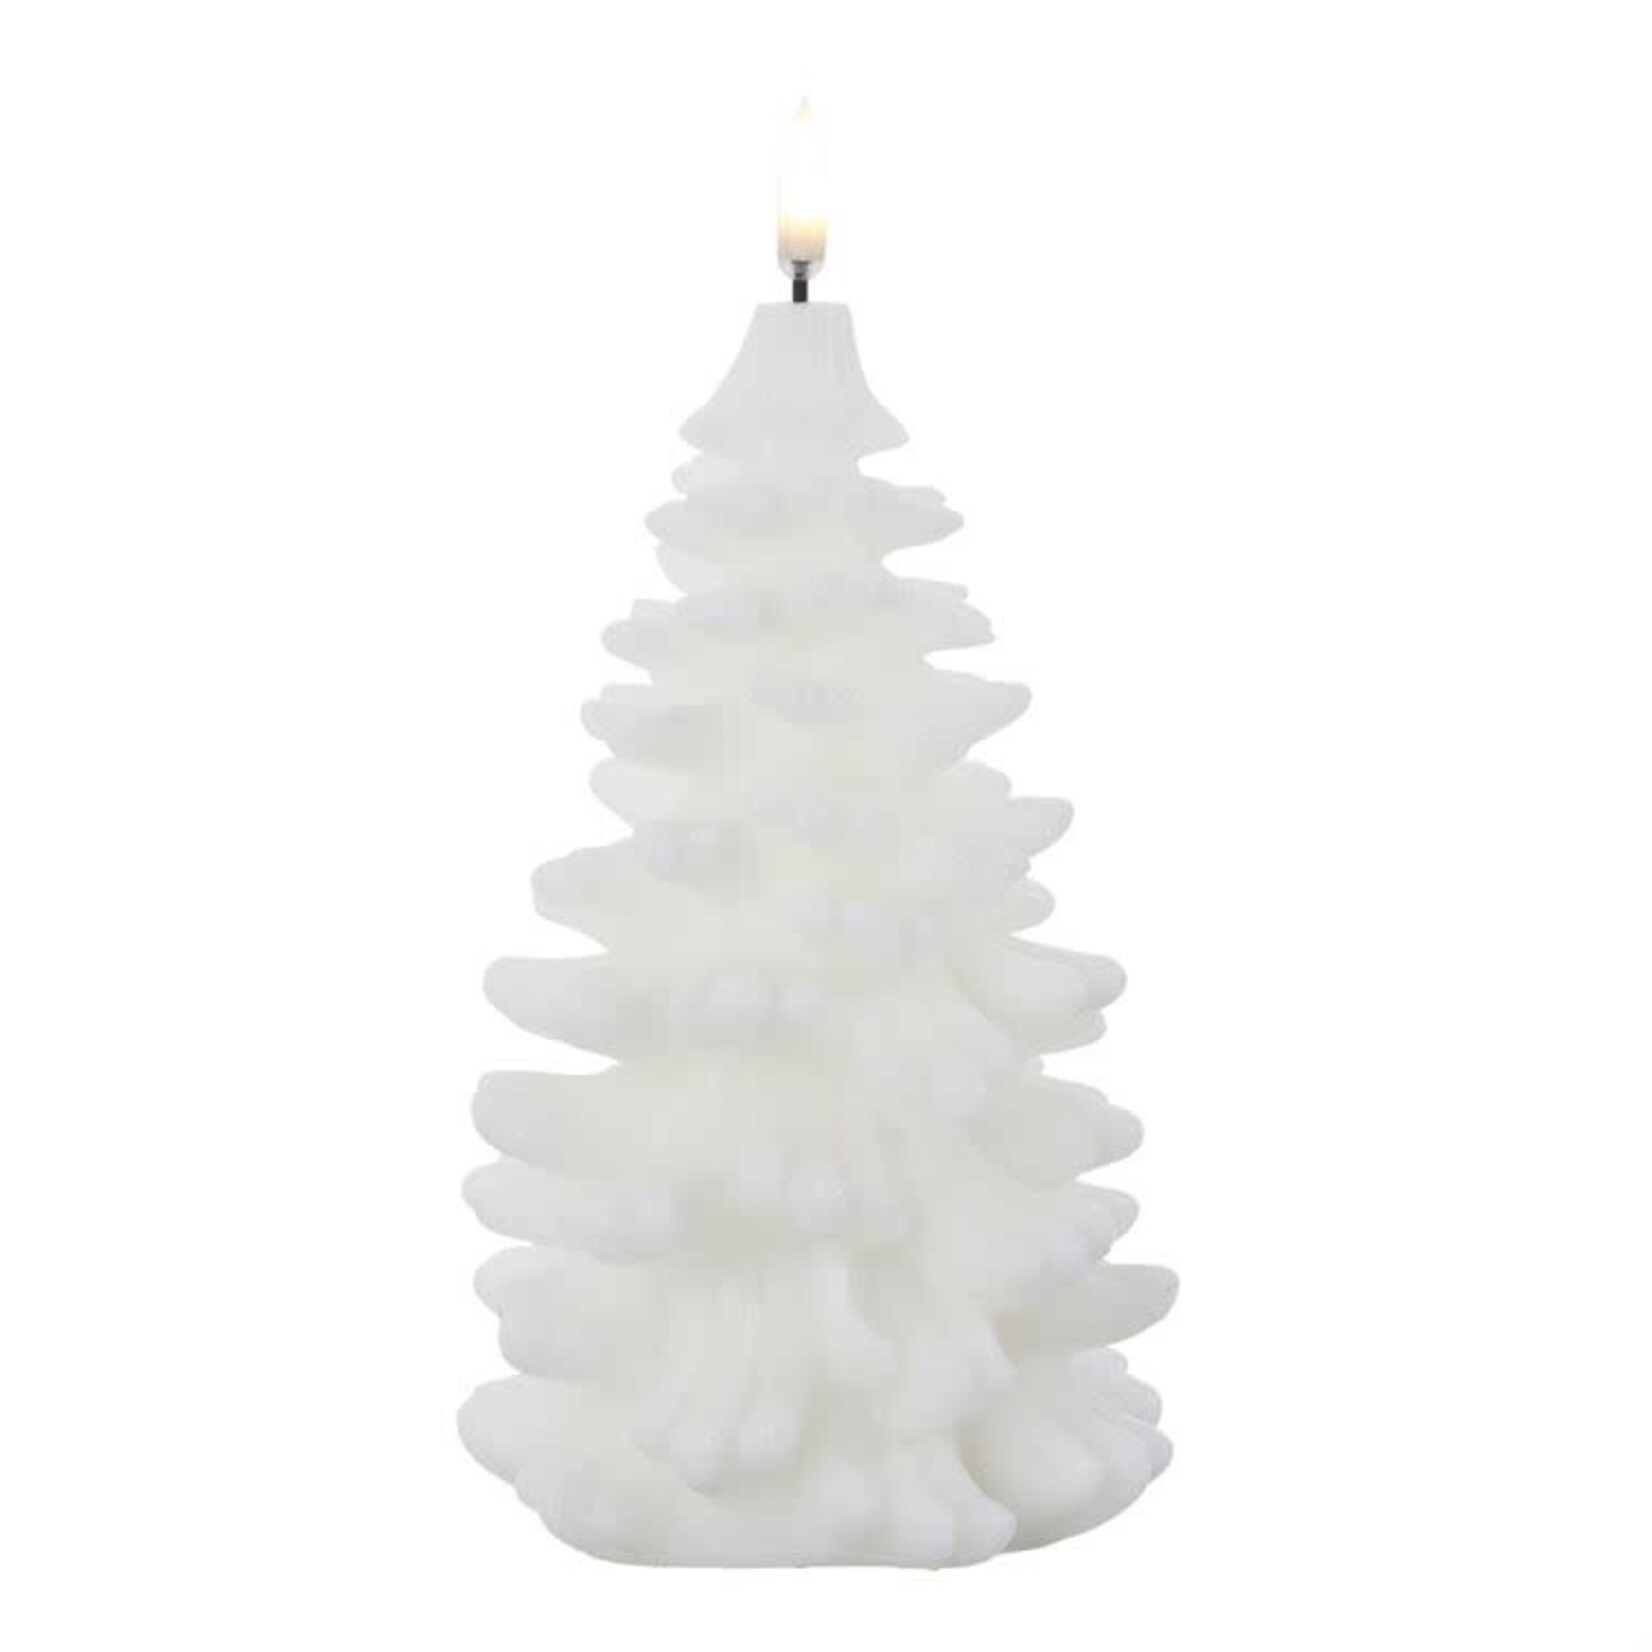 RAZ Imports White Christmas Tree Flameless Candle 4.25x8